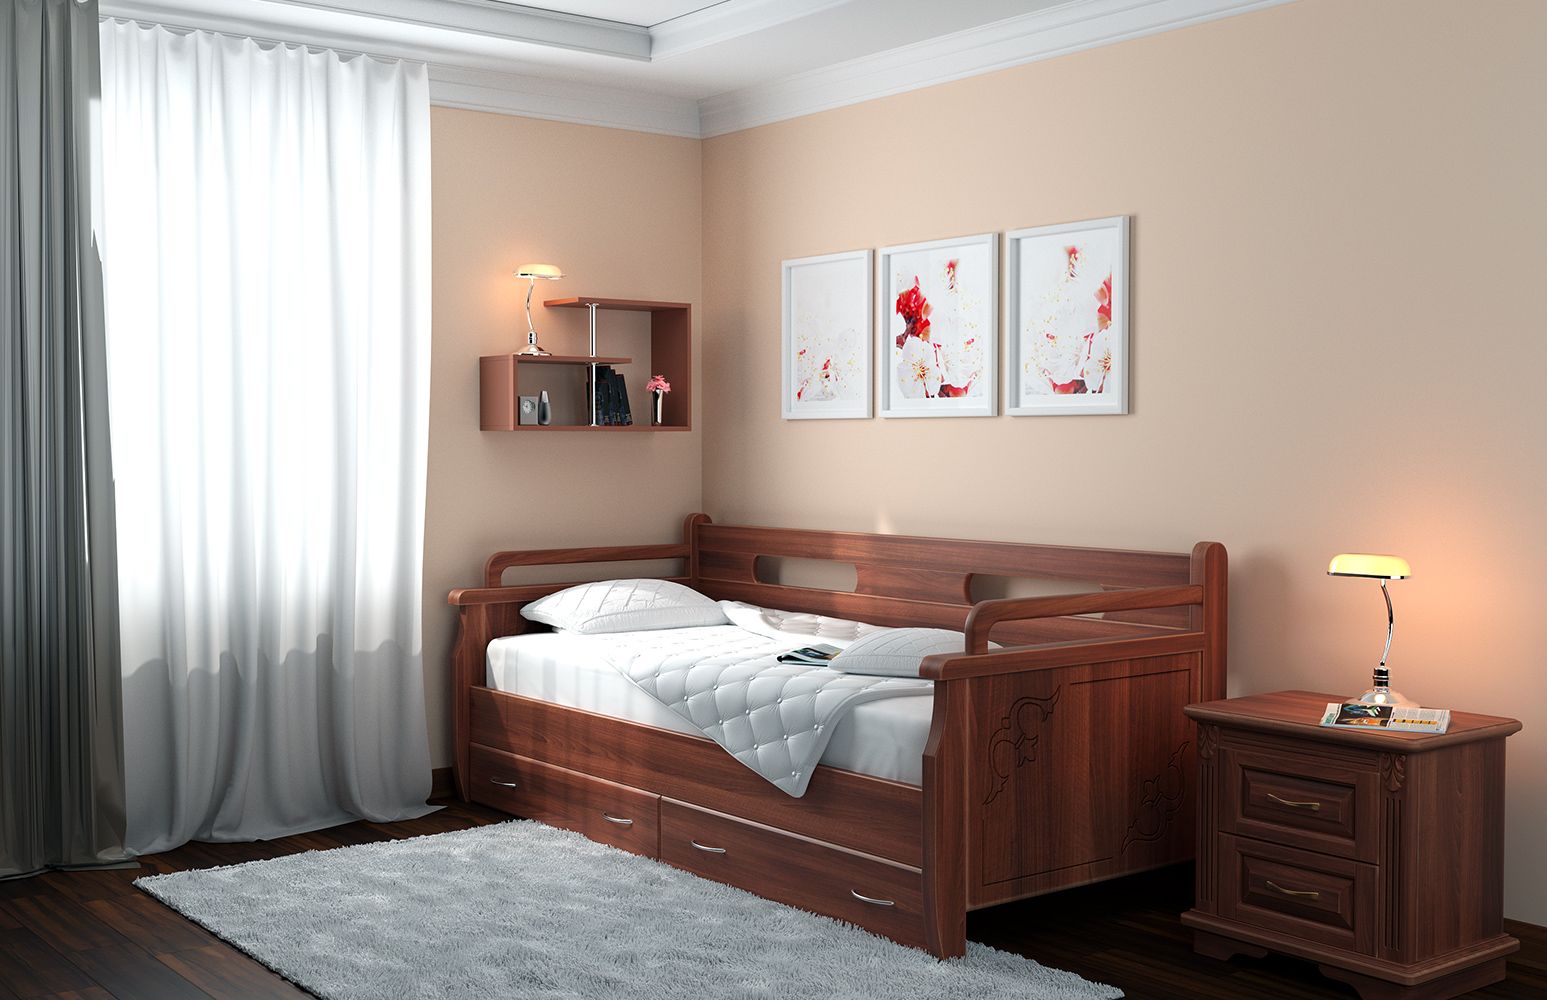 Кровать Dreamline Тахта №2 (ясень) изображен в другом виде